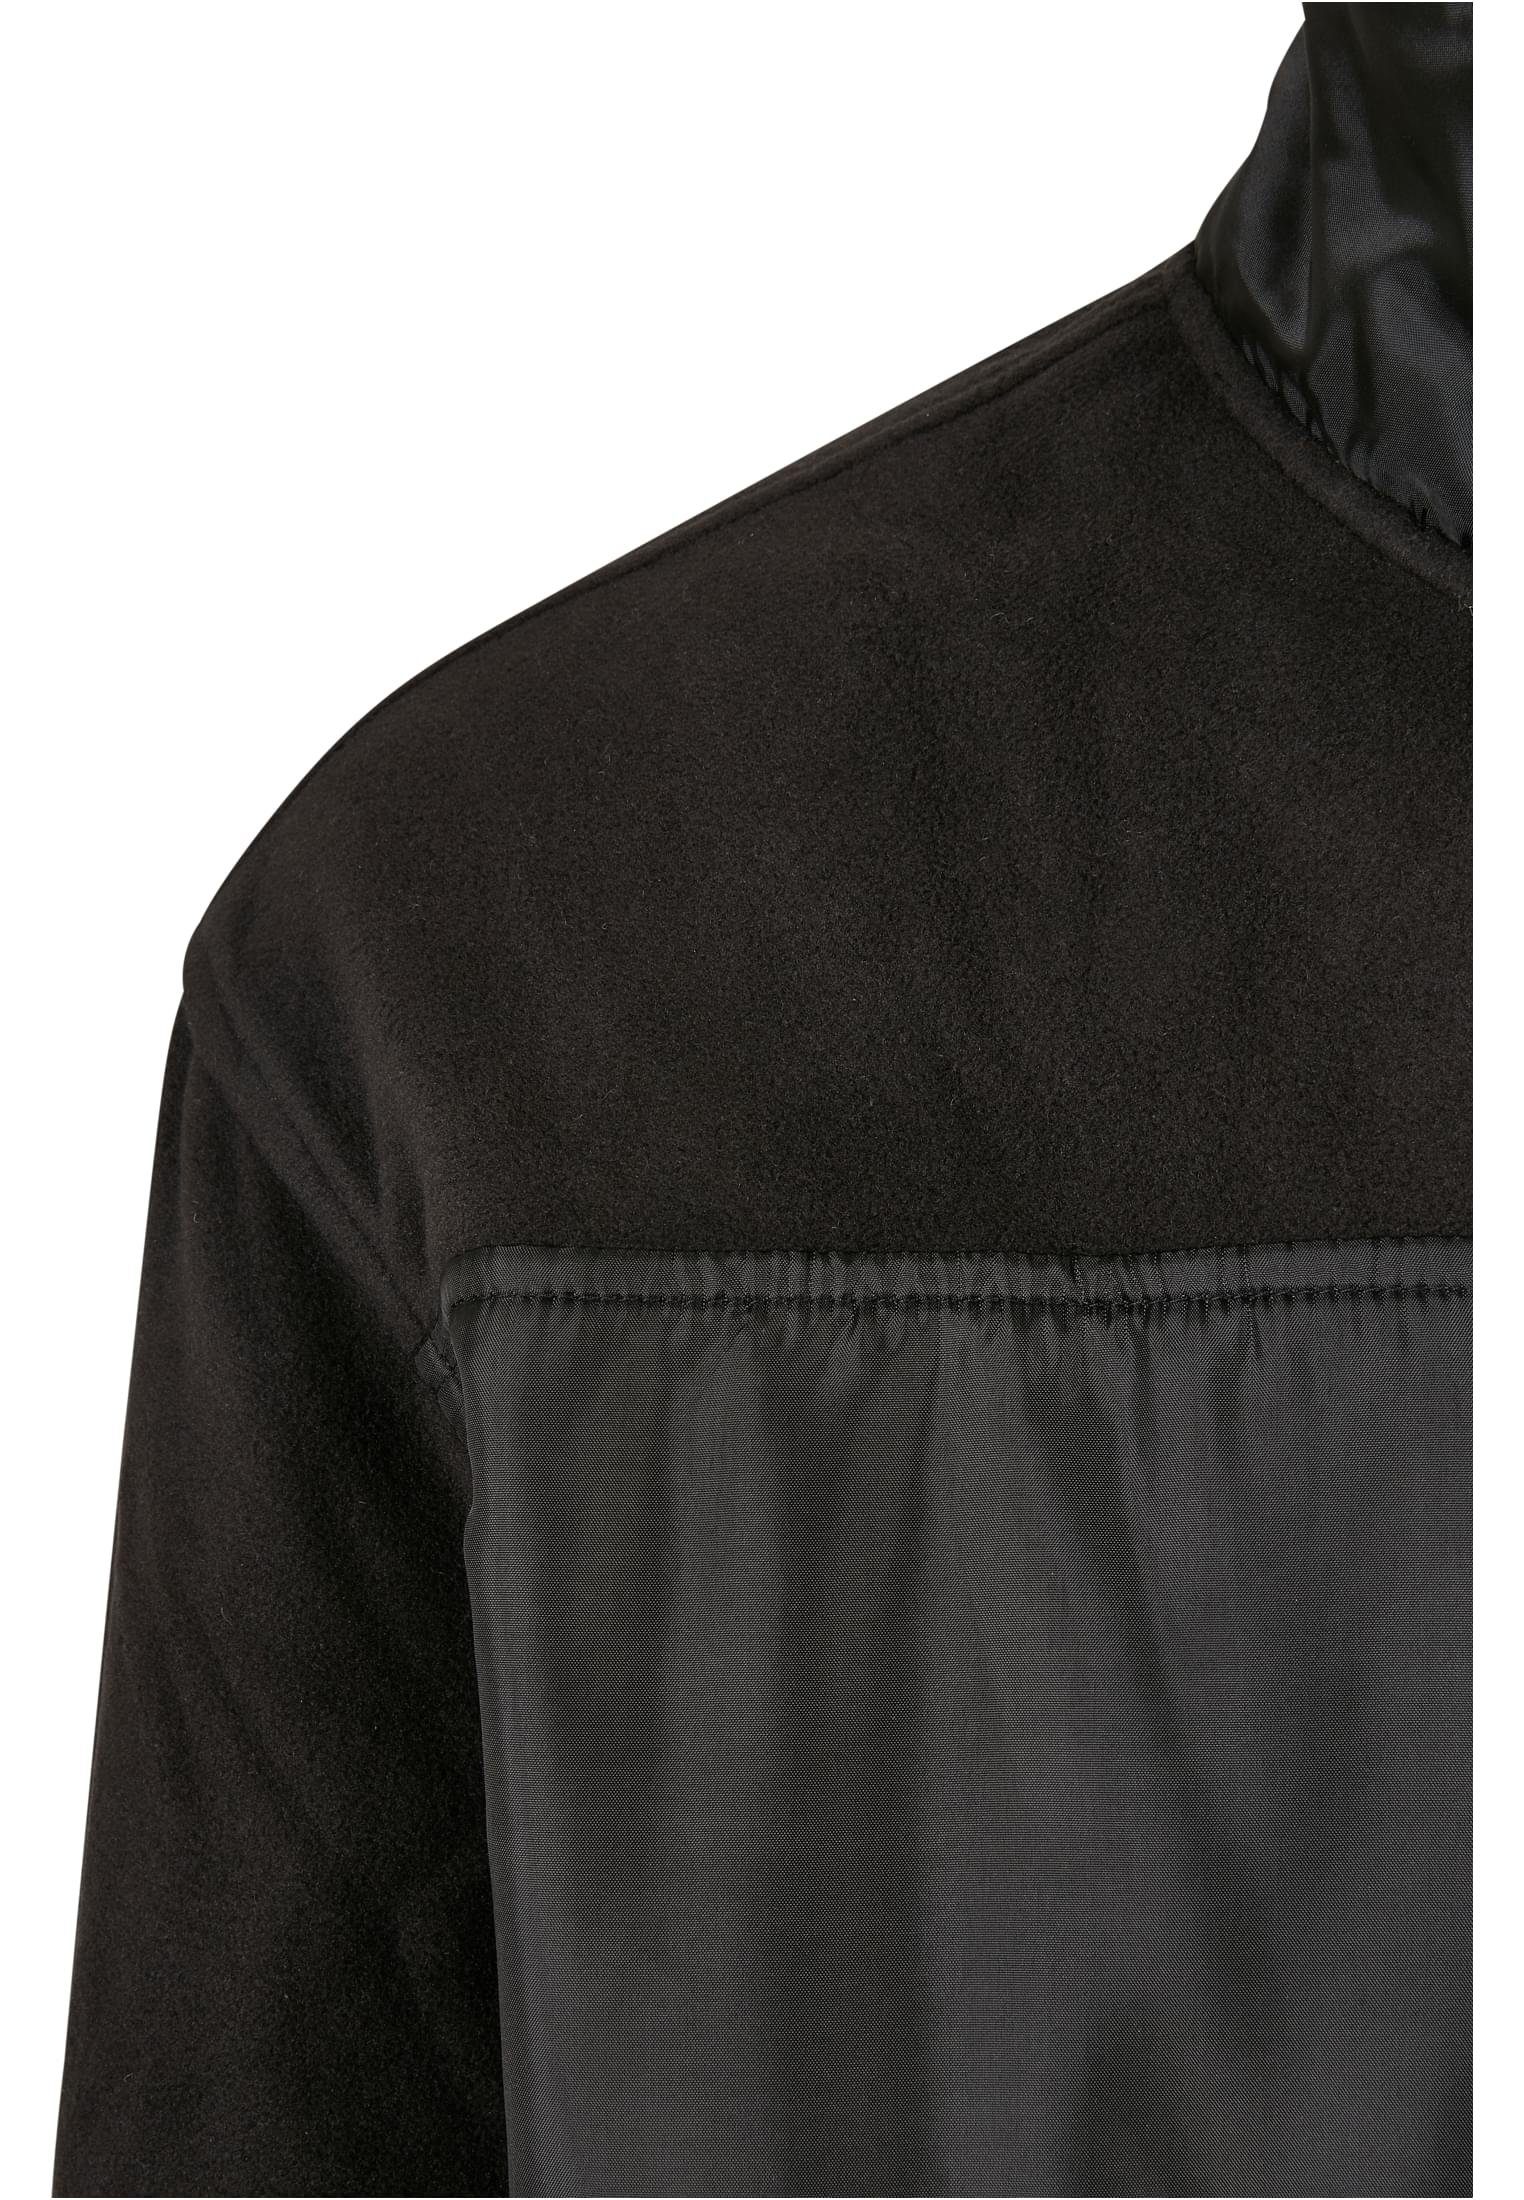 black URBAN (1-St) Patched Herren Fleecejacke Jacket Fleece Micro CLASSICS